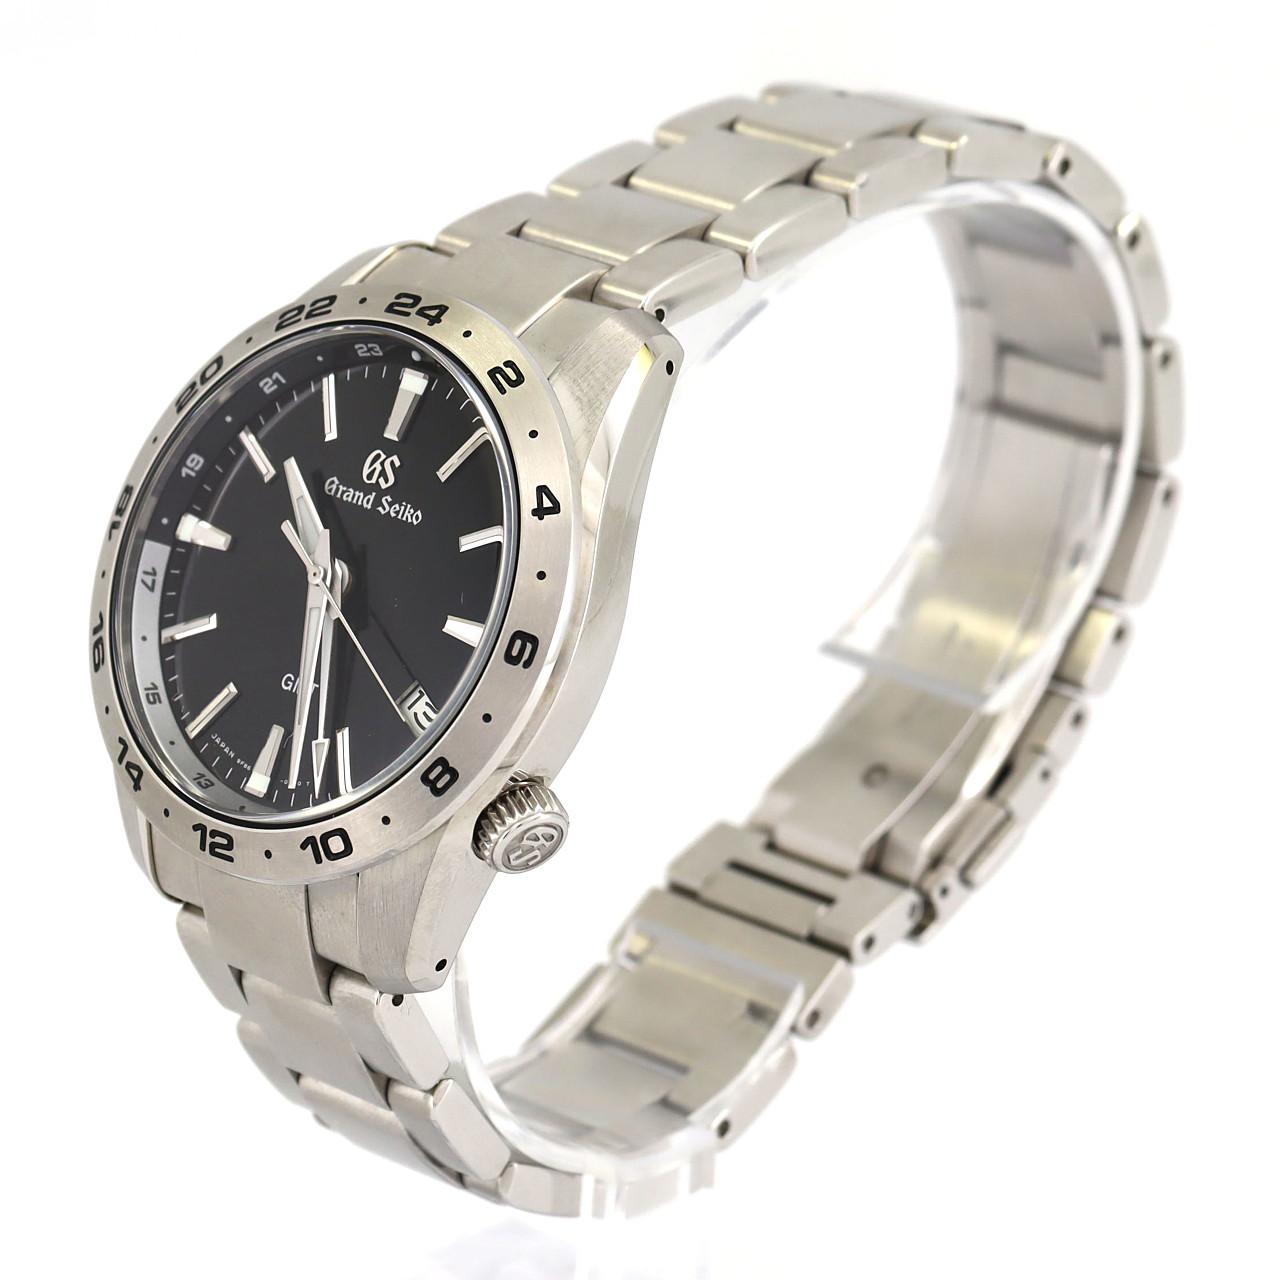 SEIKO SBGN027 9F86-0AK0 グランドセイコー スポーツコレクション GMT 腕時計 SS SS メンズ